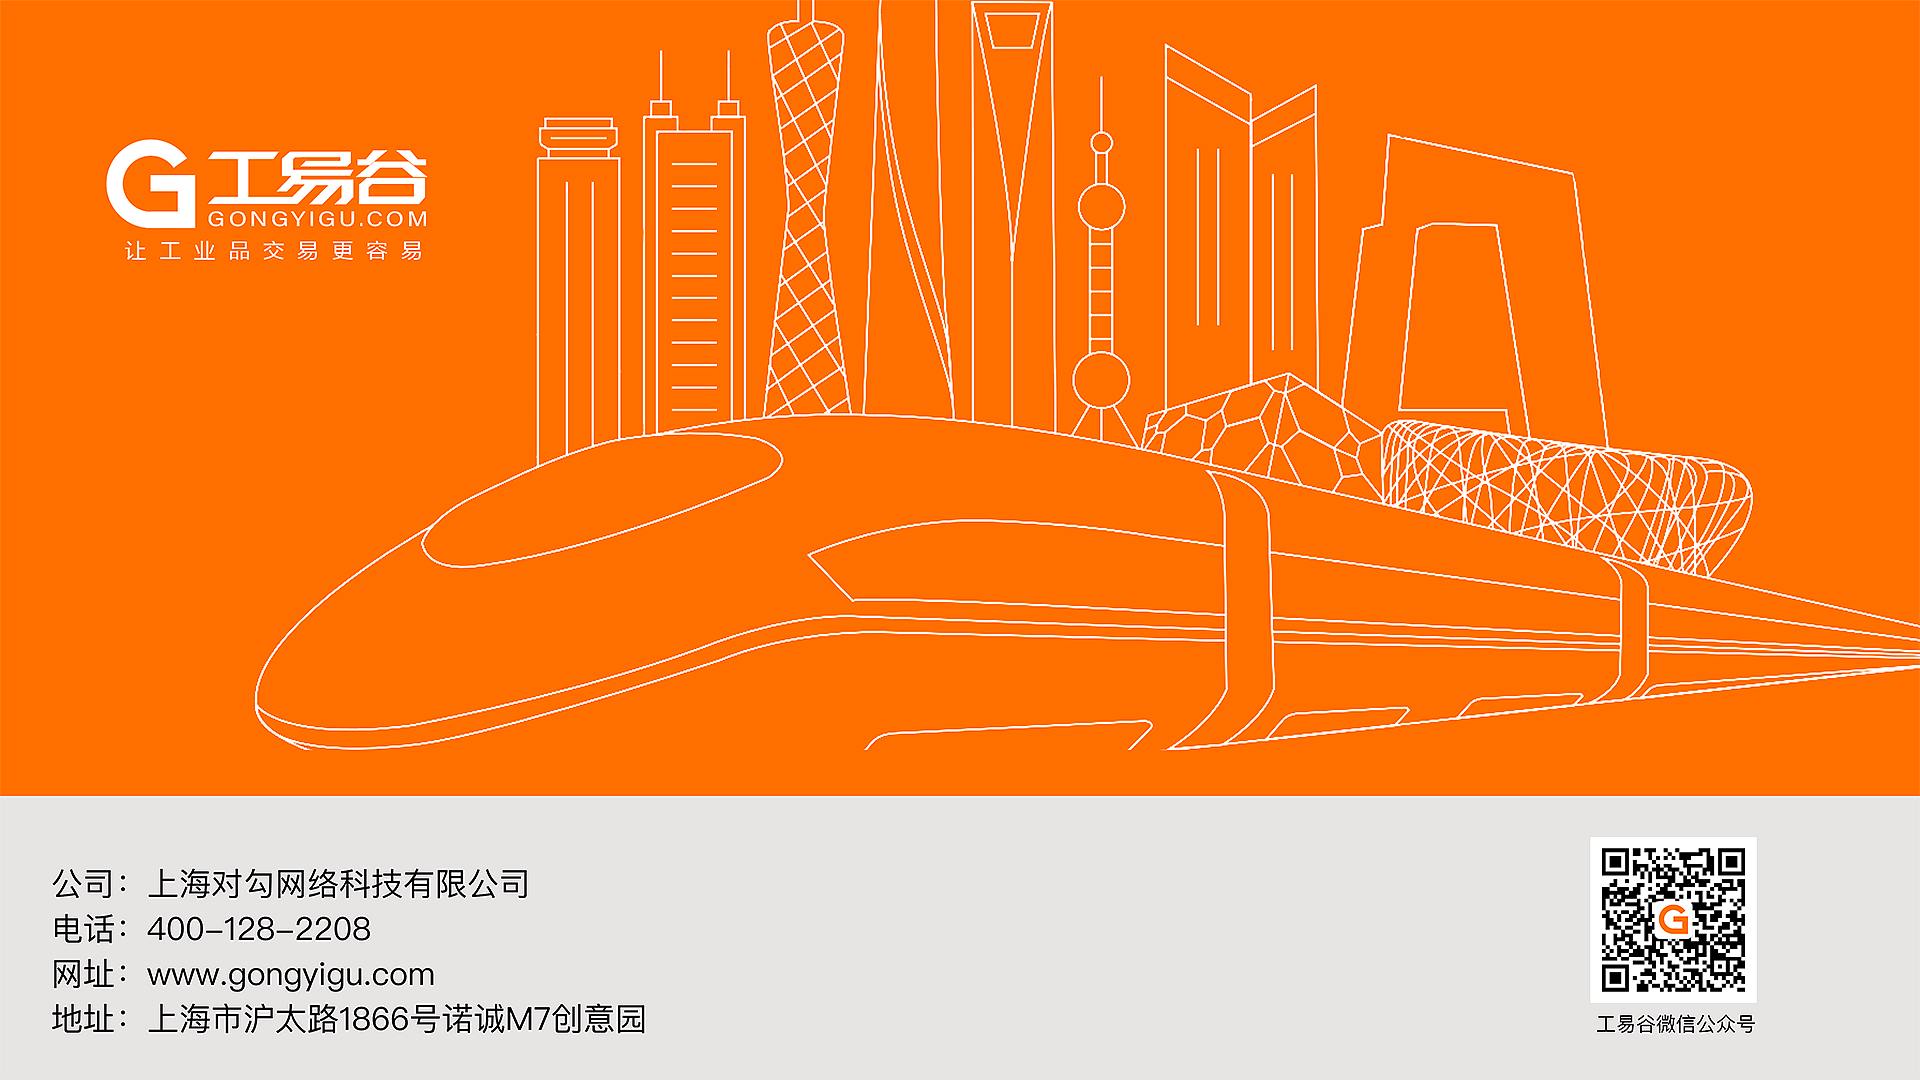 联系我们，公司：上海对勾网络科技有限公司；电话：400-128-2208；网址：www.gongyigu.com；地址：上海市沪太路1866号诺诚M7创意园